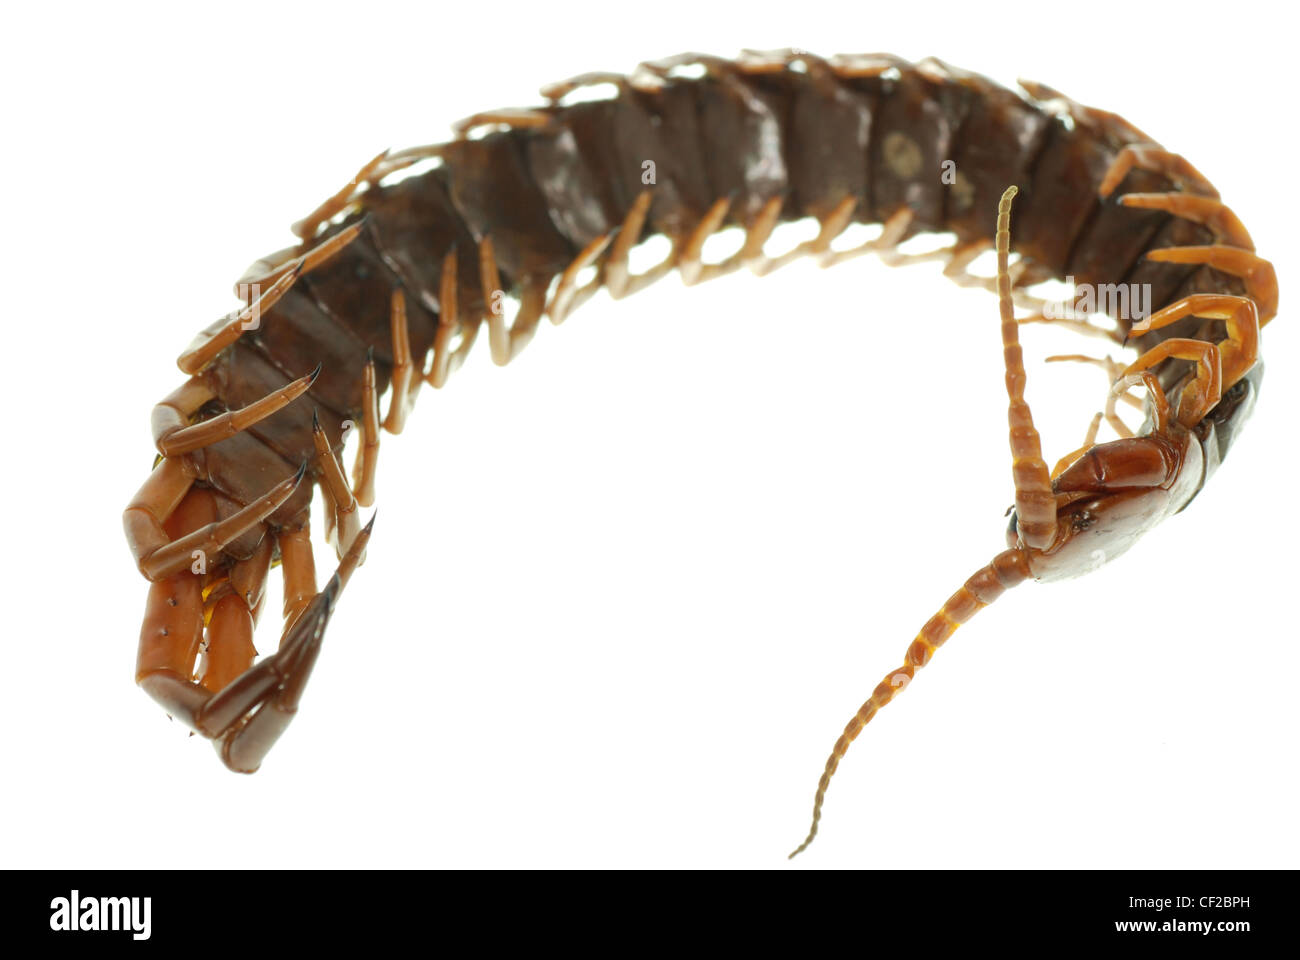 poison animal centipede macro isolated on white background Stock Photo